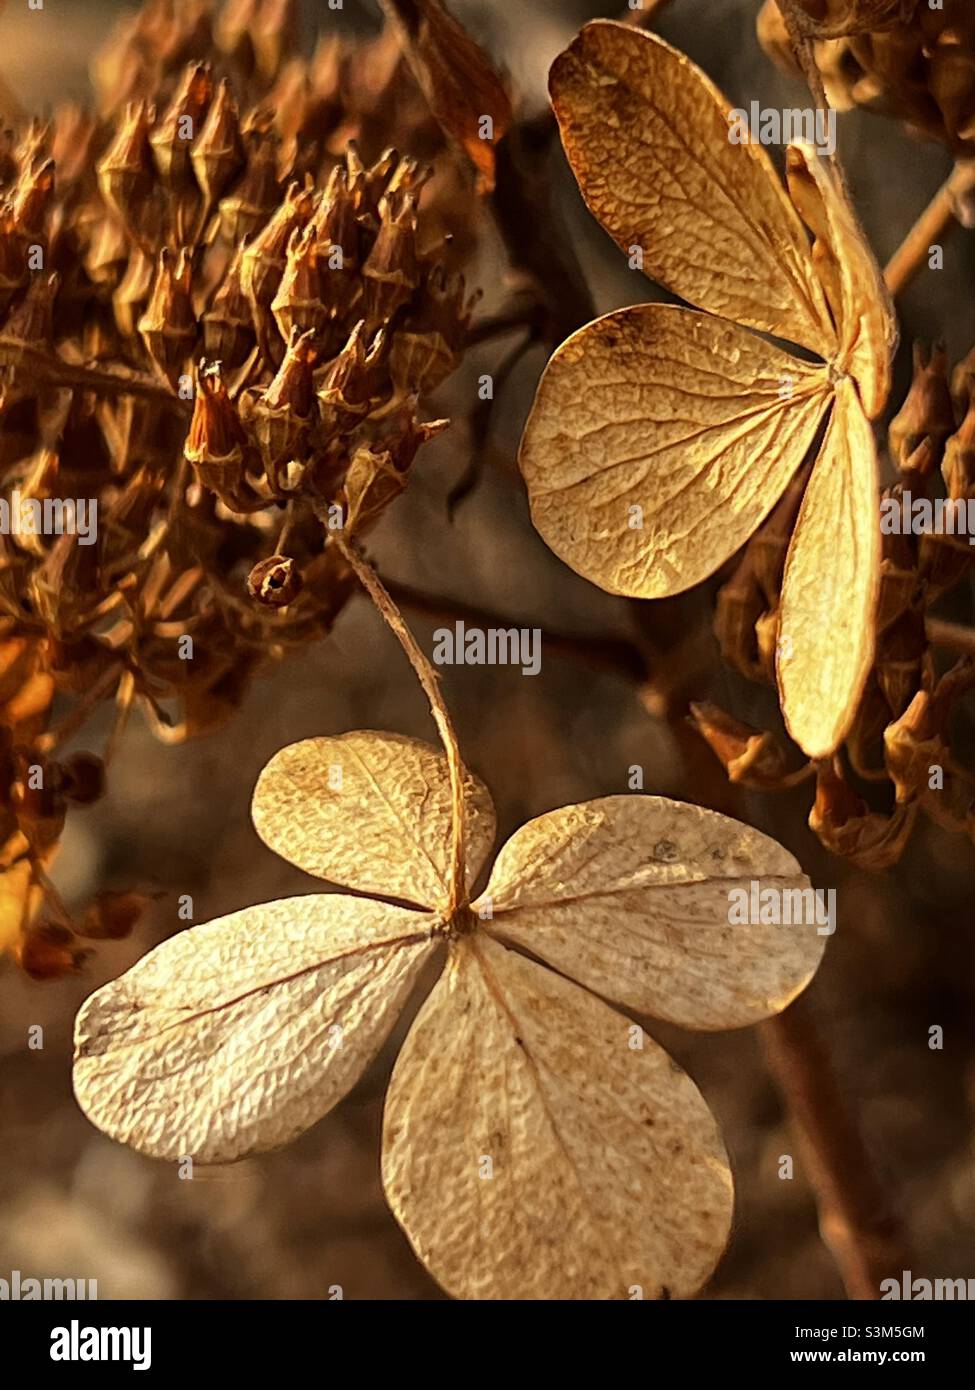 Wechsel der Jahreszeiten. Golden Hydrangeas sieht aus wie ein glücklicher Kleeblatt mit vier Blättern Stockfoto